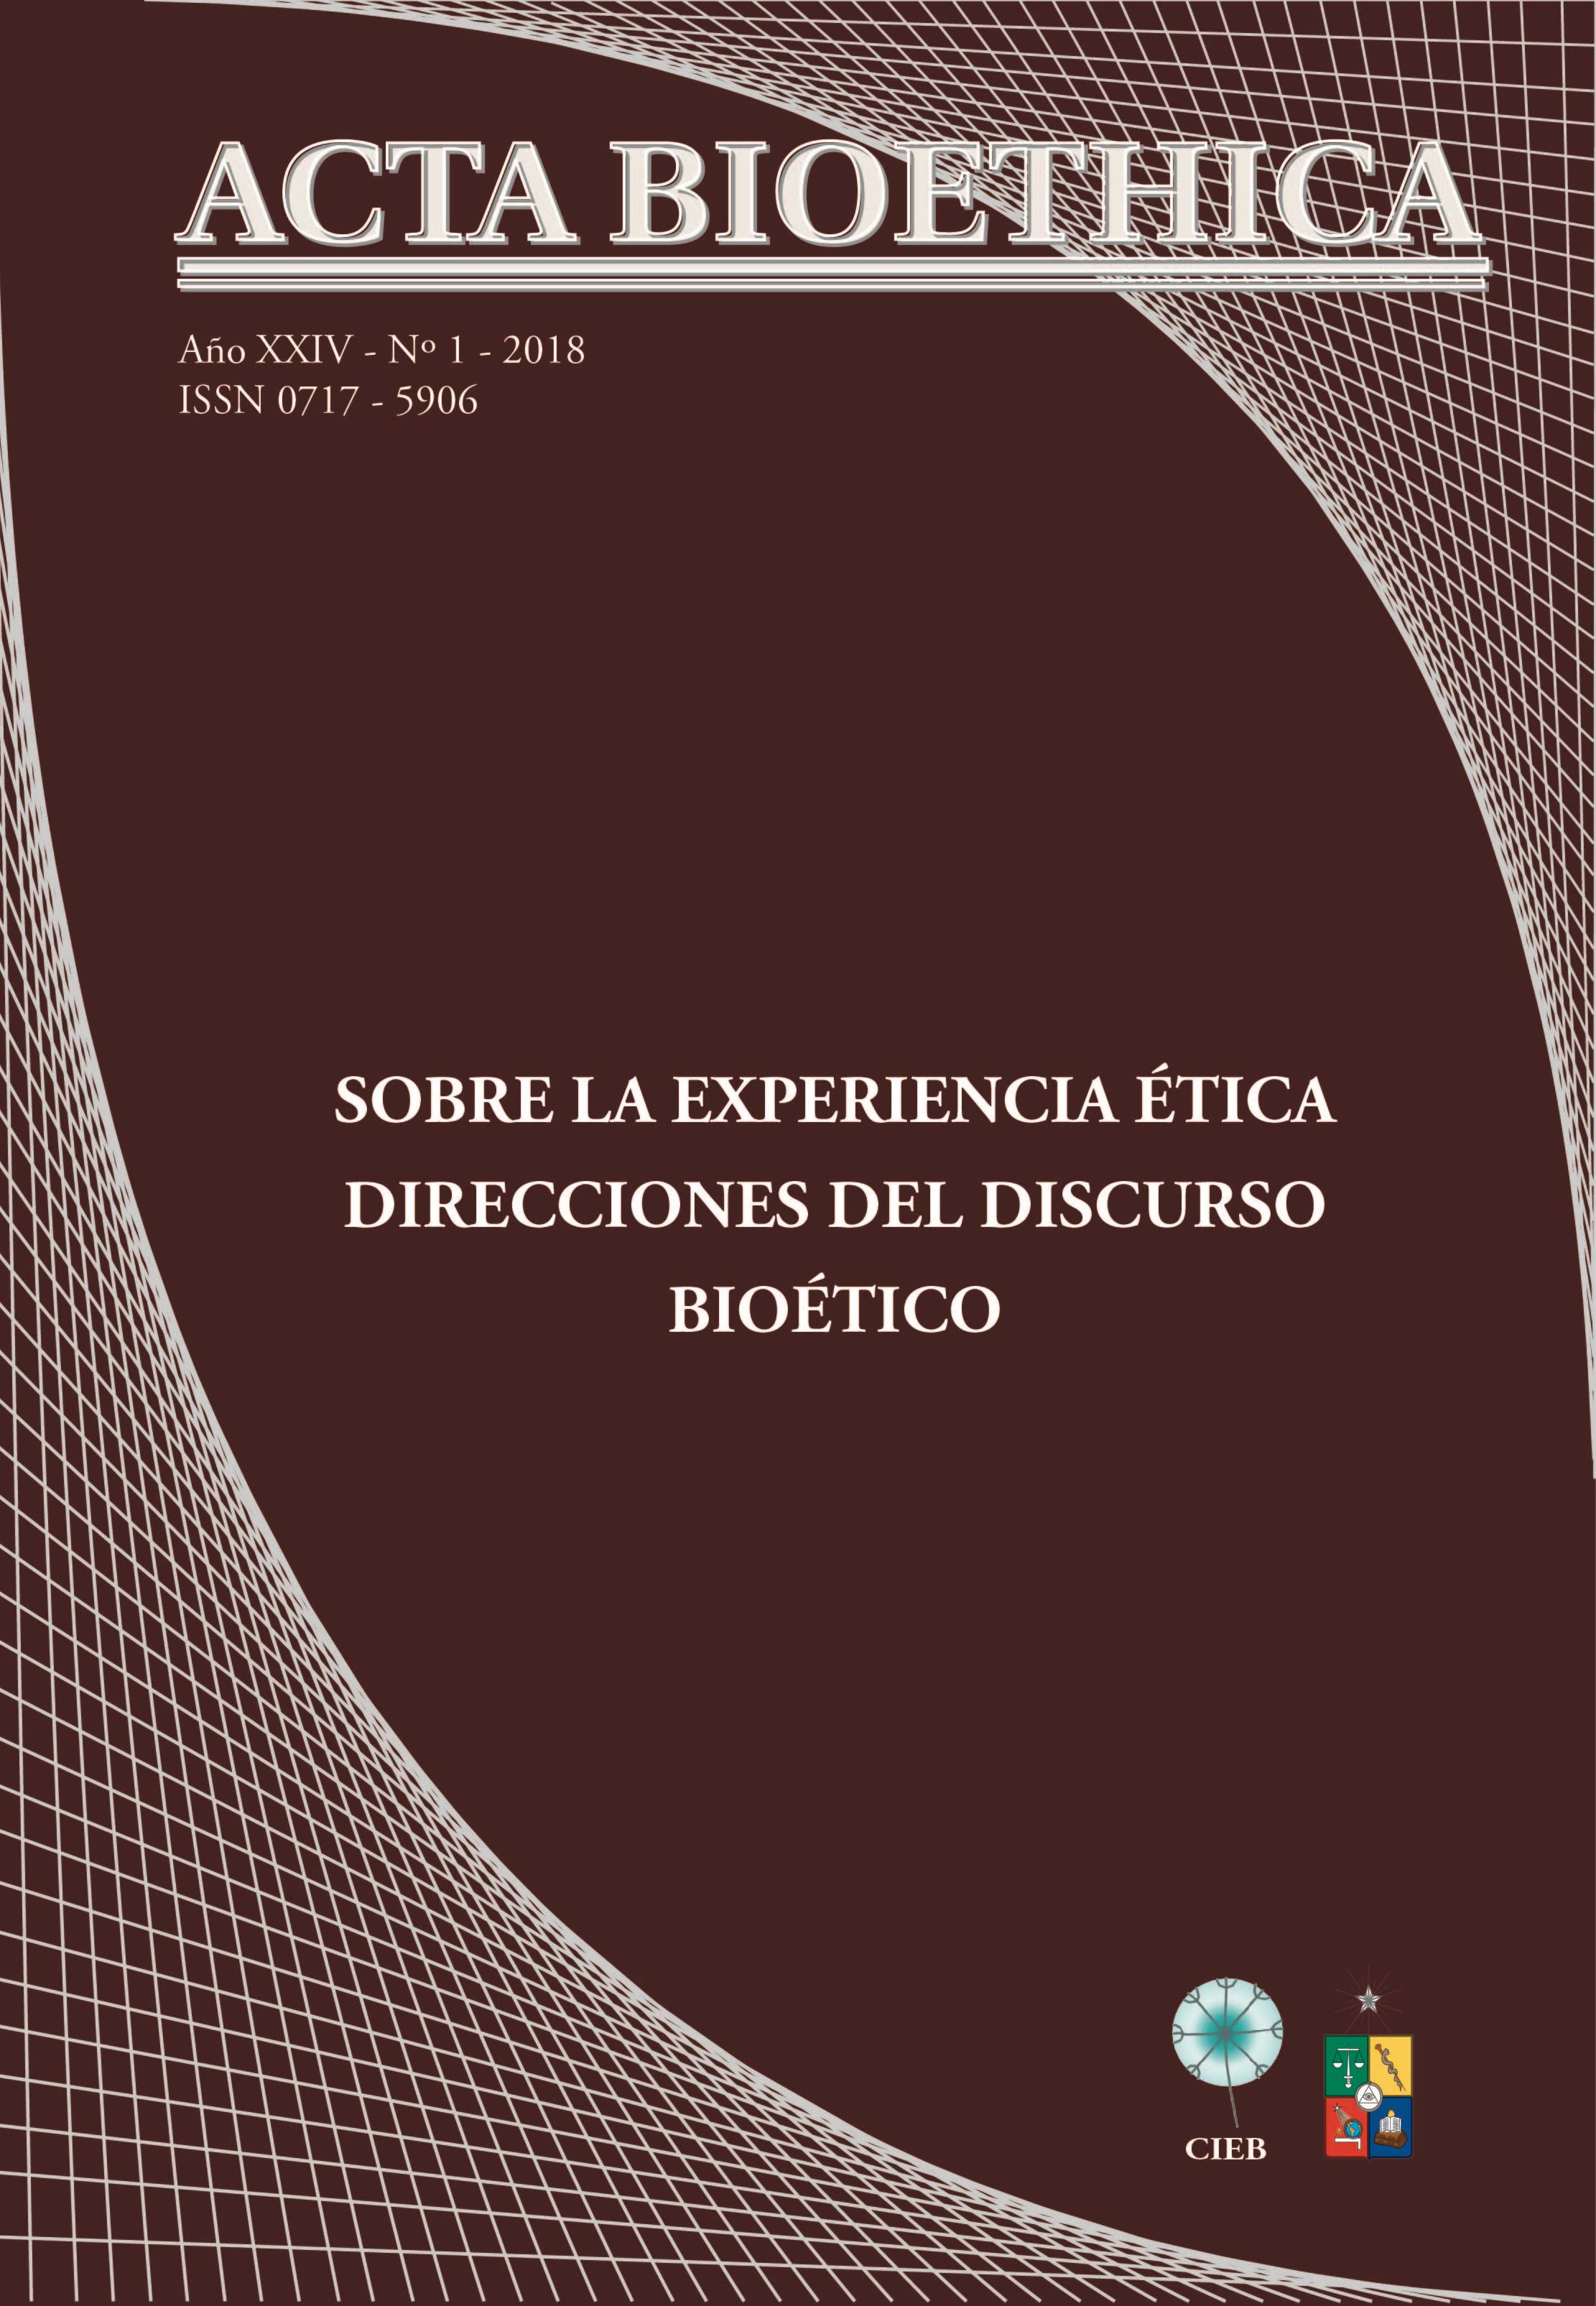 											View Vol. 24 No. 1 (2018): Sobre la experiencia ética. Direcciones del discurso bioético
										